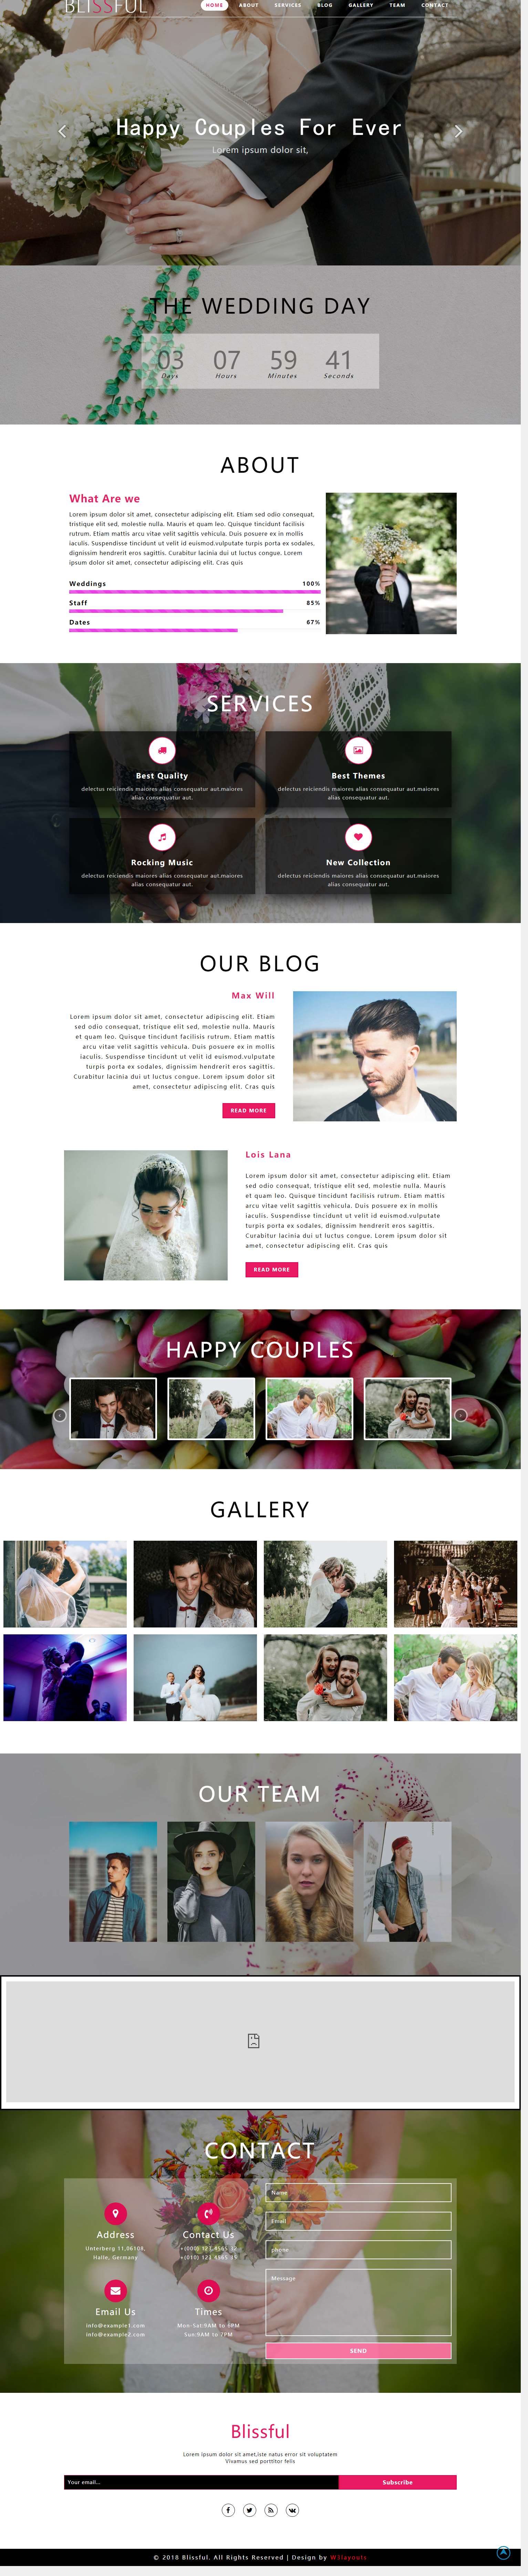 粉色简洁风格的婚礼服务整站网站源码下载